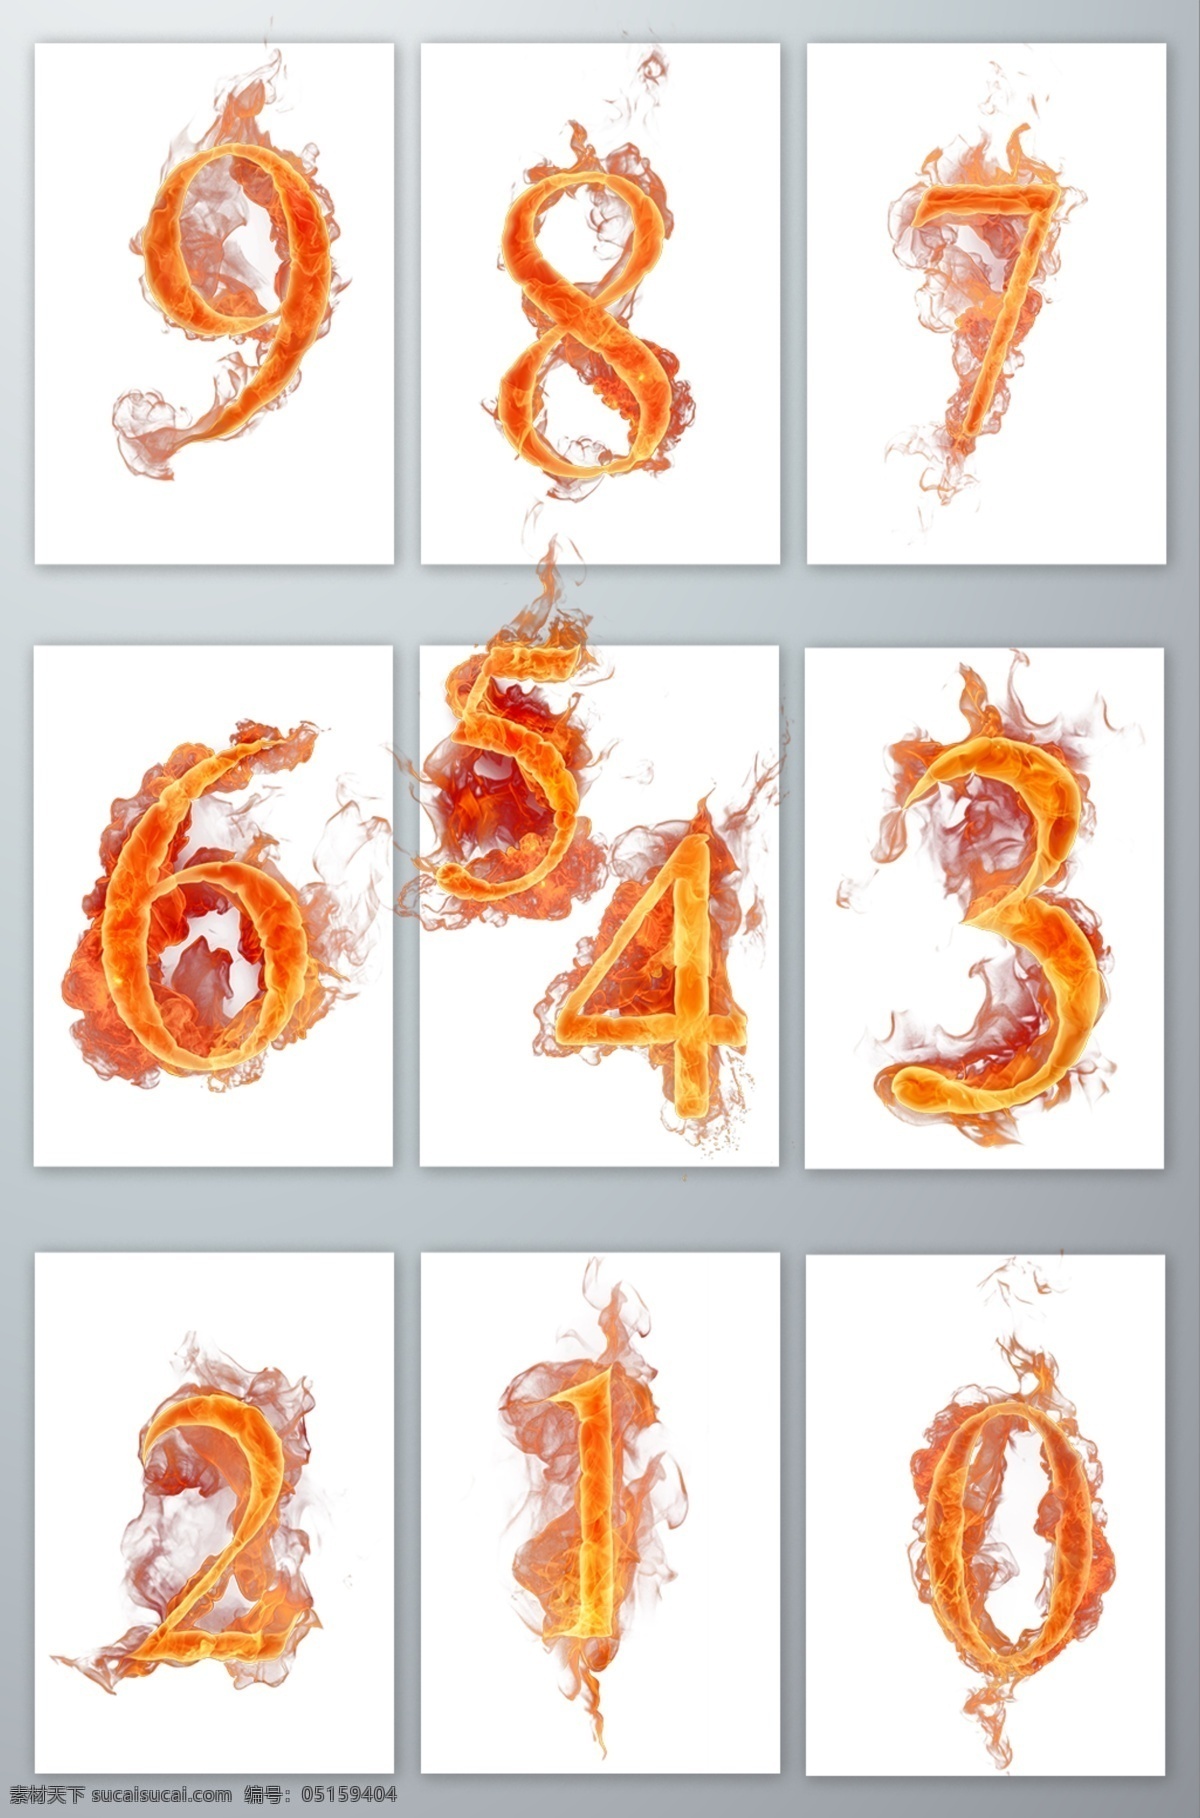 燃烧 阿拉伯数字 燃烧的数字 燃烧的 火焰 红色的 火红的 数字素材 字体设计 激情的 设计素材 免抠图 元素 透明 热情的 热感 分层